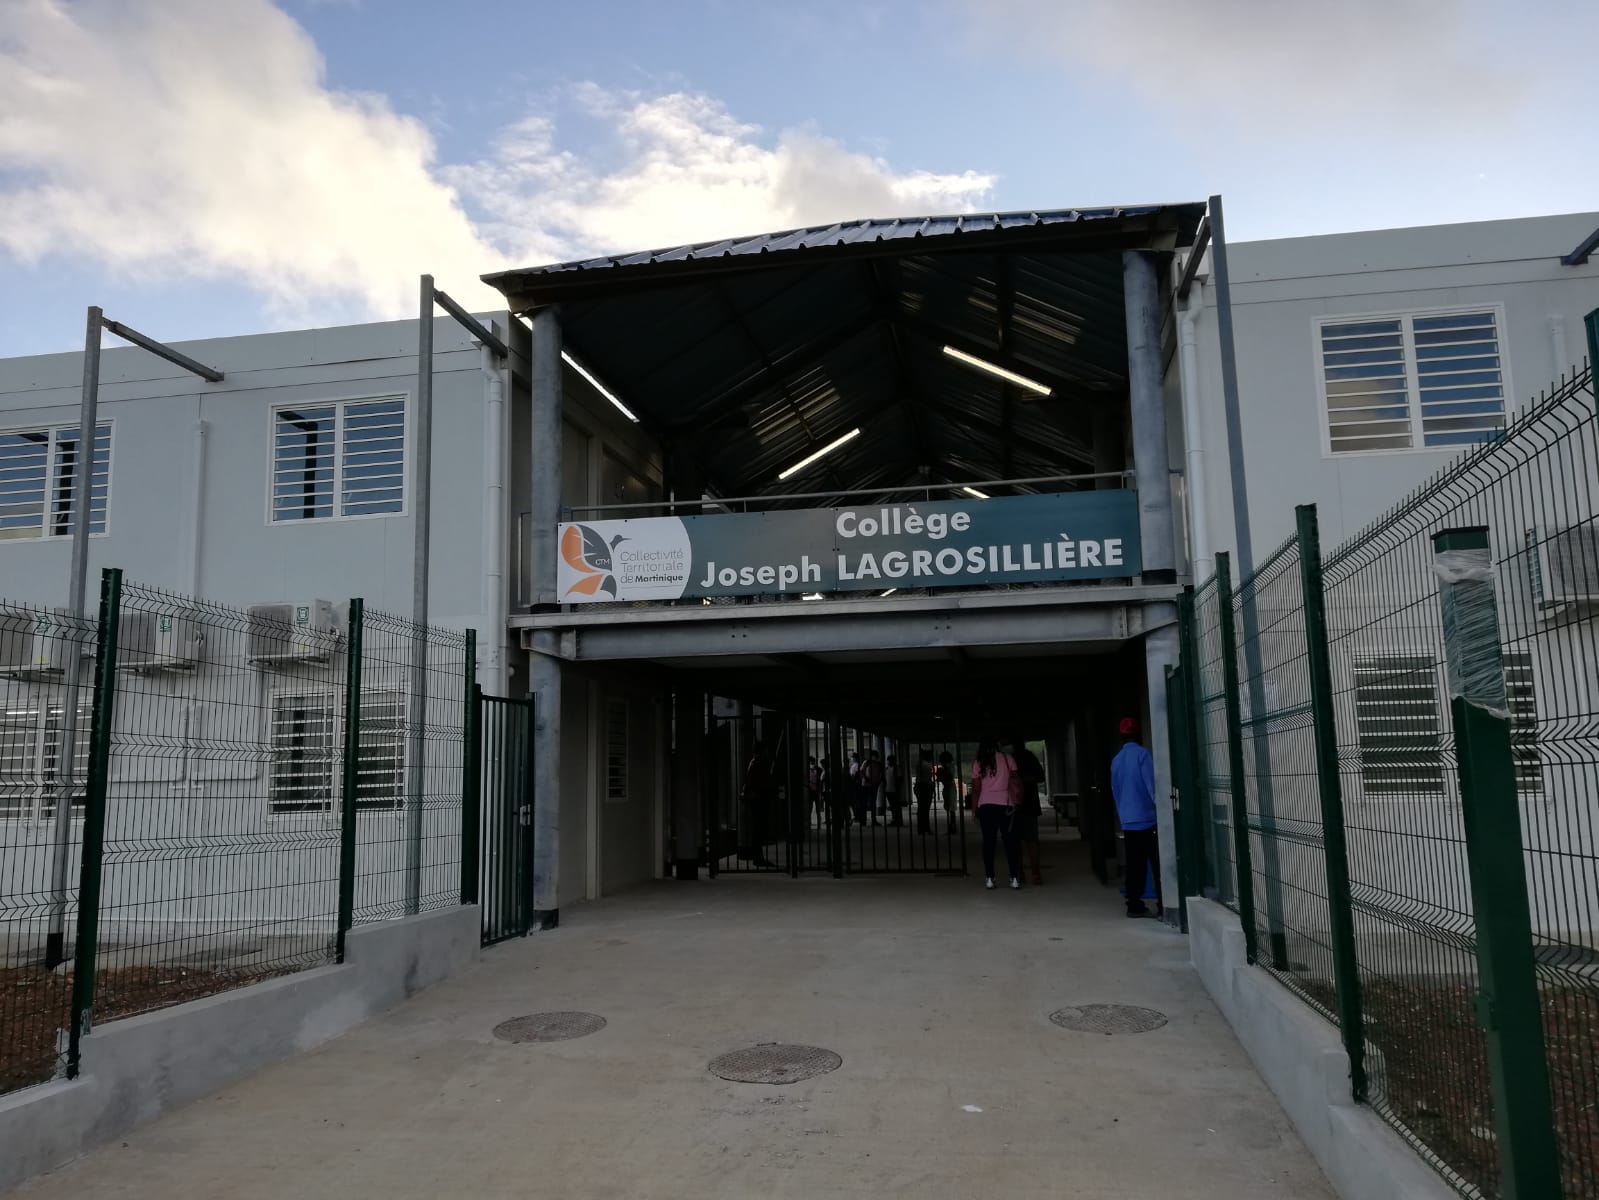     Les élèves du collège Lagrosillière à Sainte-Marie ont pris possession de leur nouvel établissement

